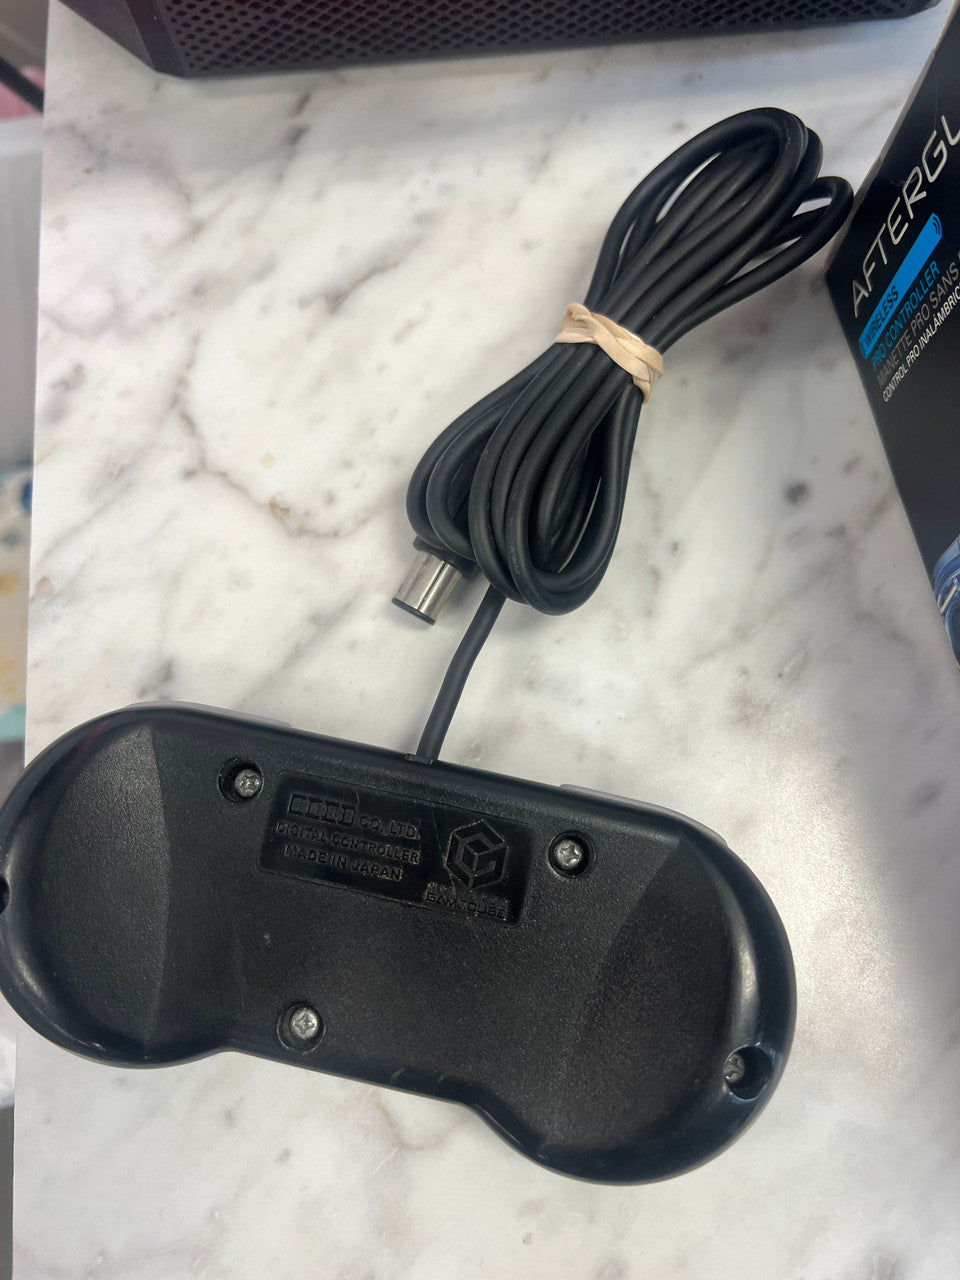 Official HORI Digital Pad Nintendo Gamecube Controller Black Bad A button